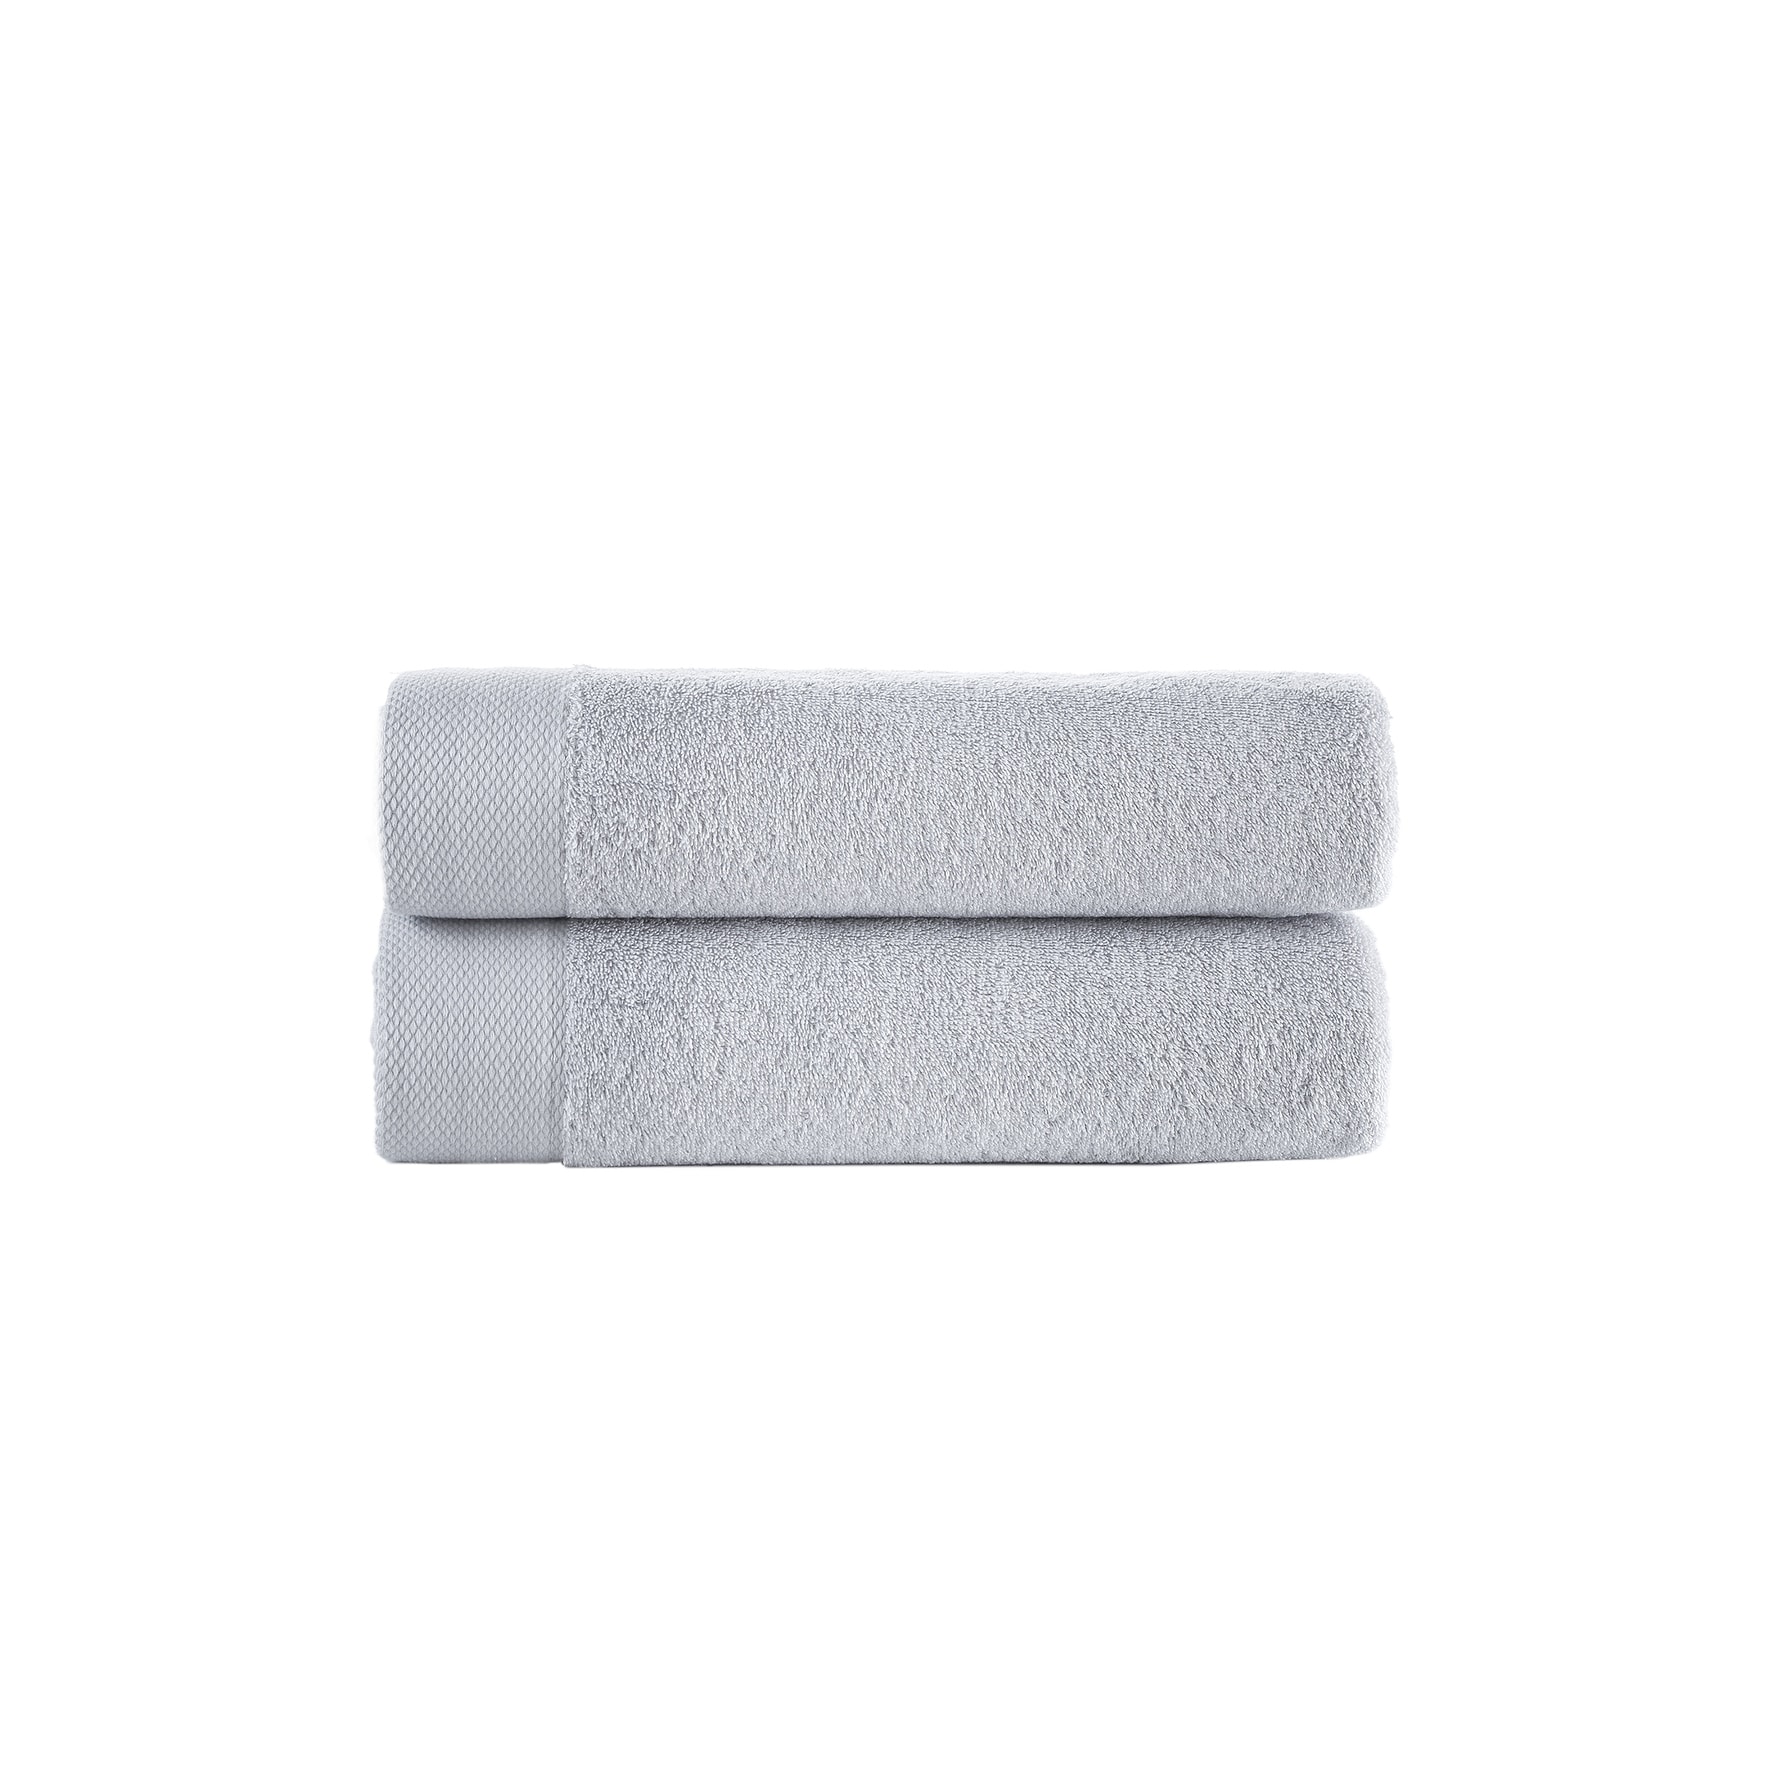 https://ak1.ostkcdn.com/images/products/is/images/direct/3d8dc6ebc4c1924d8633c24eb4ec8fee4cb55fad/Brooks-Brothers-Solid-Signature-2-pcs-Bath-Towels.jpg